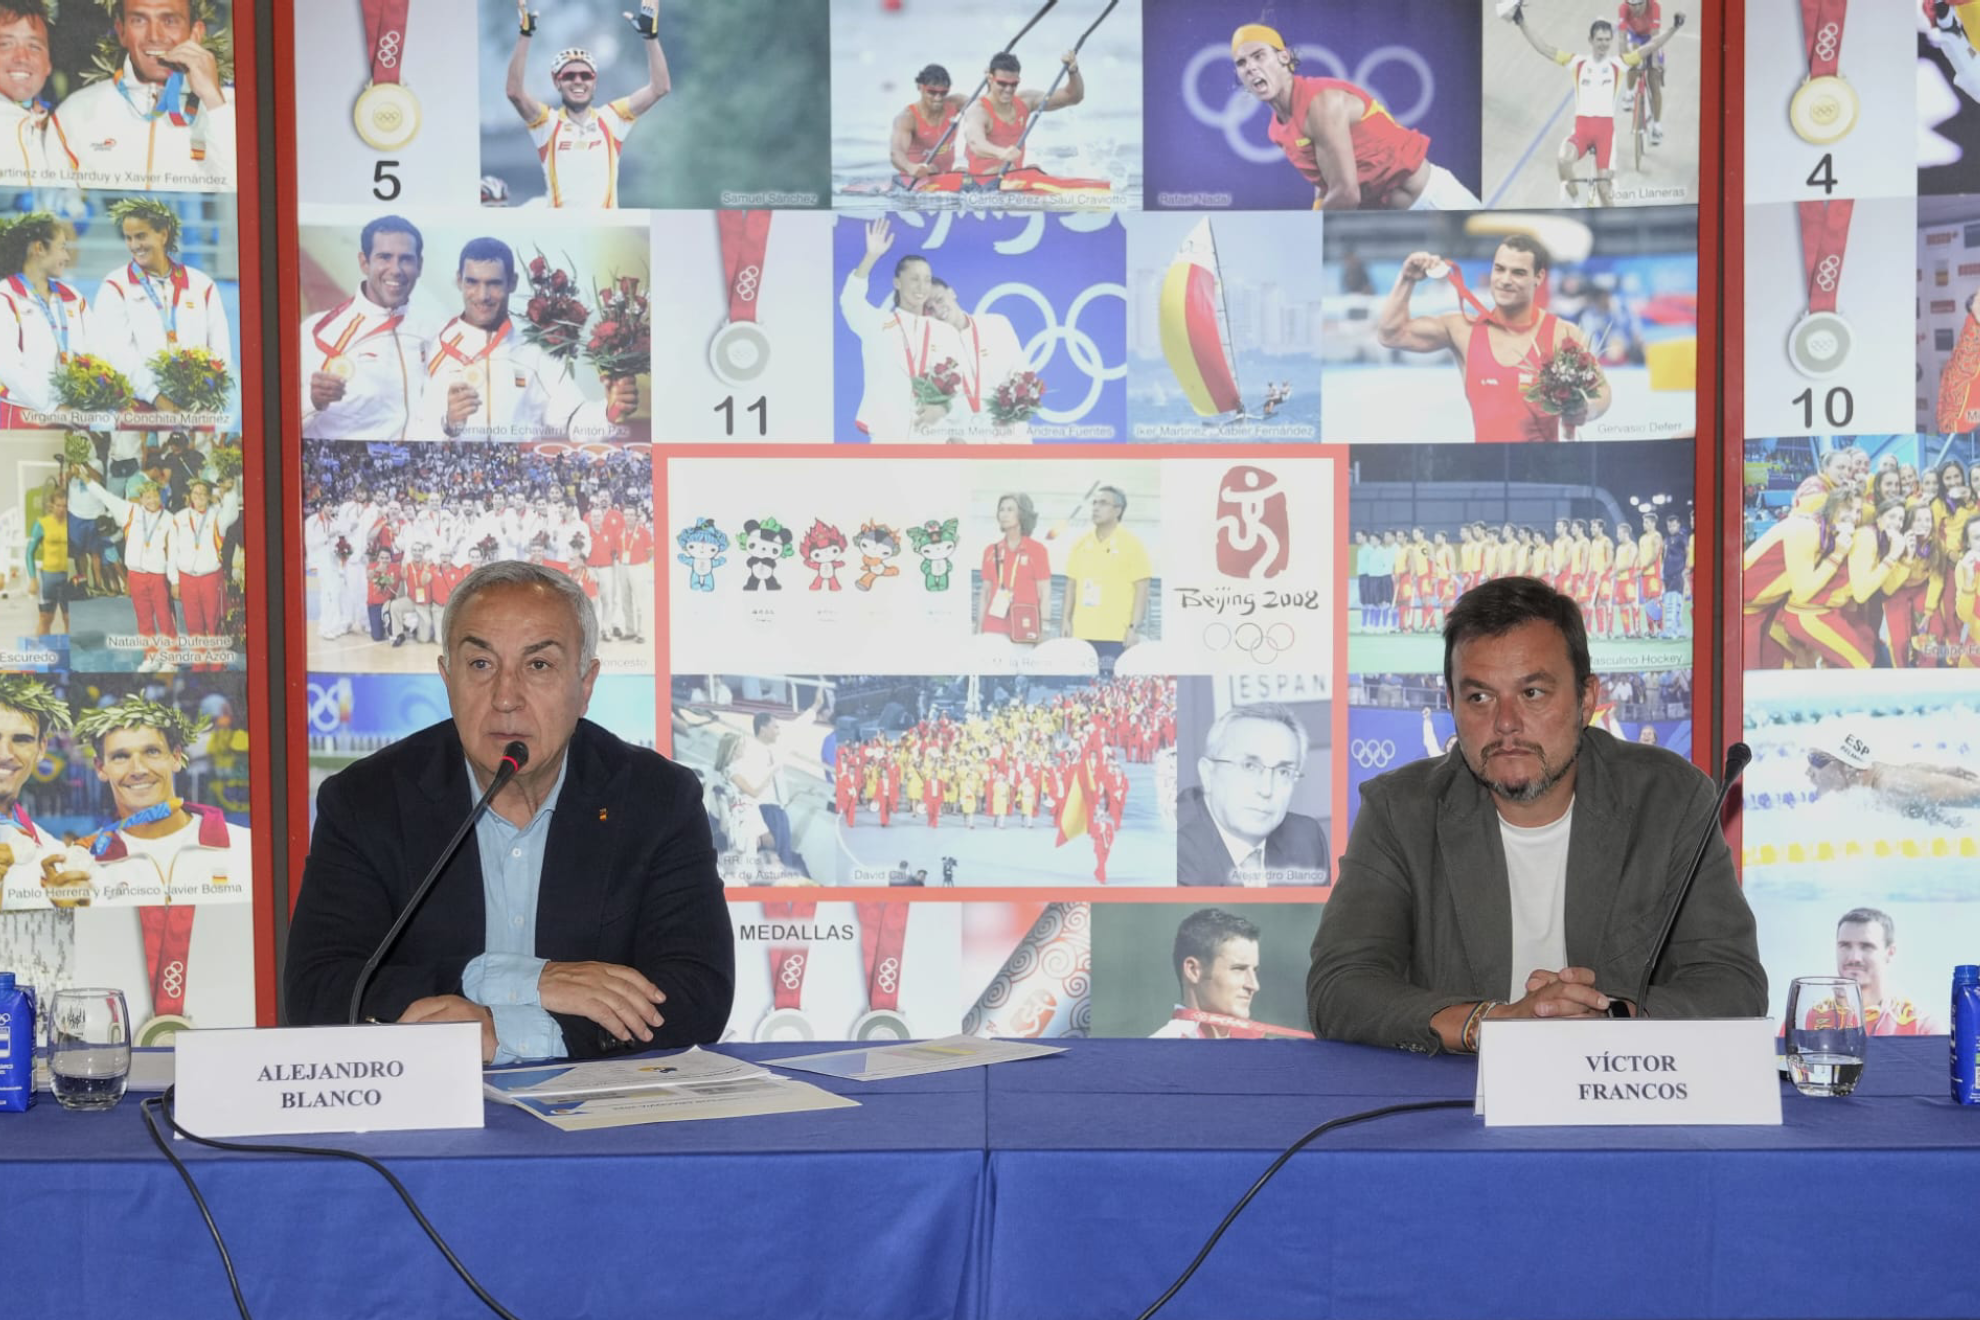 El presidente del COE, Alejandro Blanco, junto al Secretario de Estado del deporte, Víctor Francos